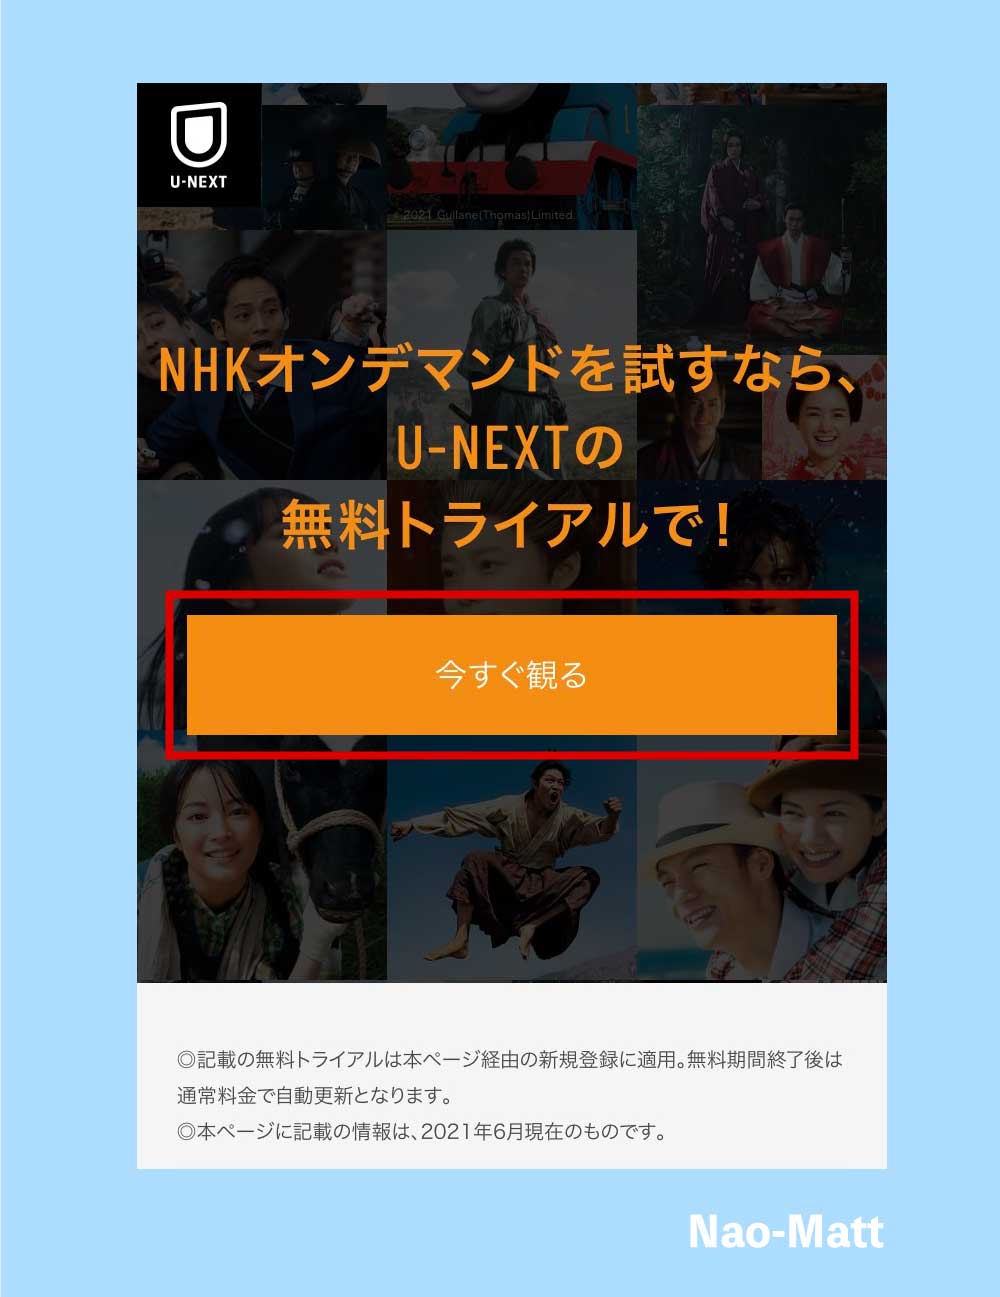 NHKオンデマンドの登録画面です